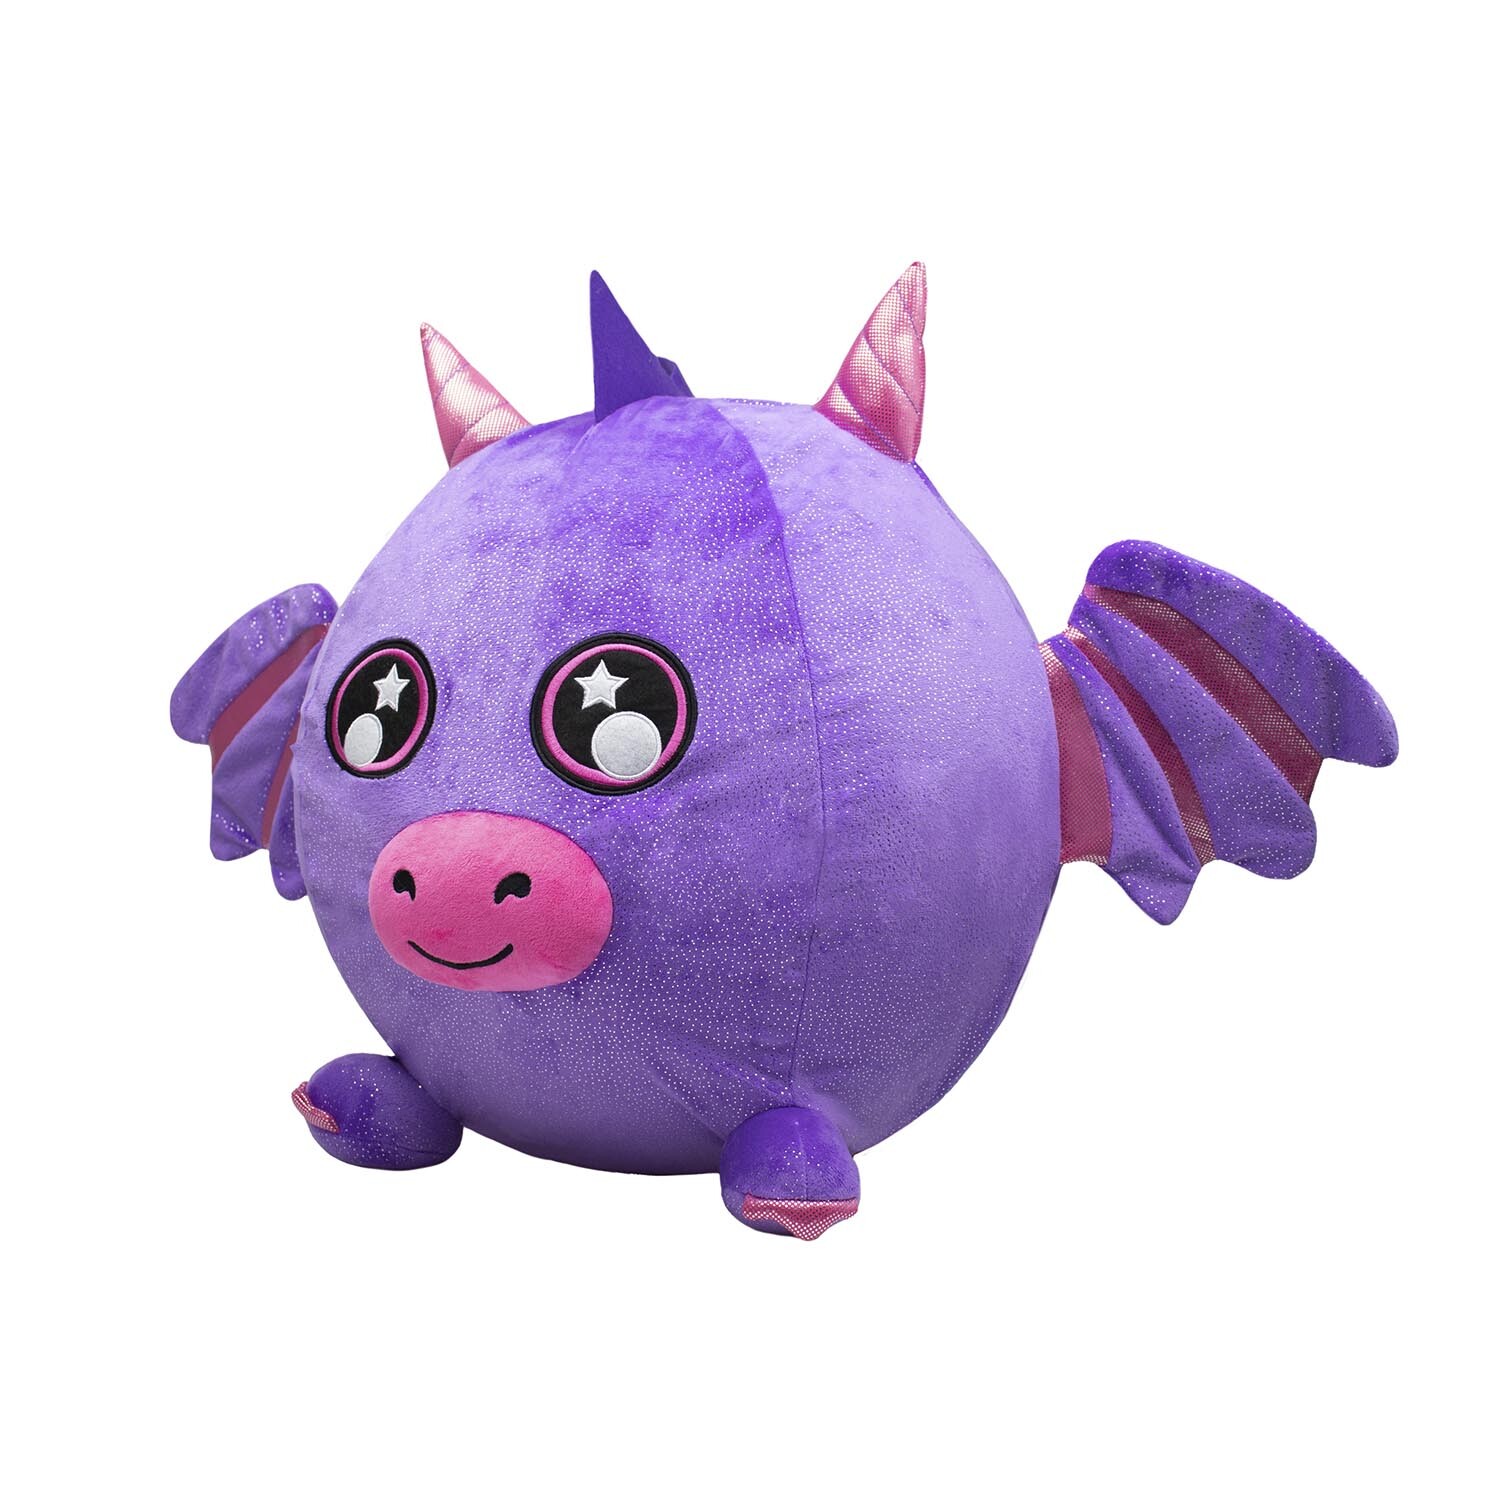 Biggies Purple Dragon Plush Toy XXL Size Image 2